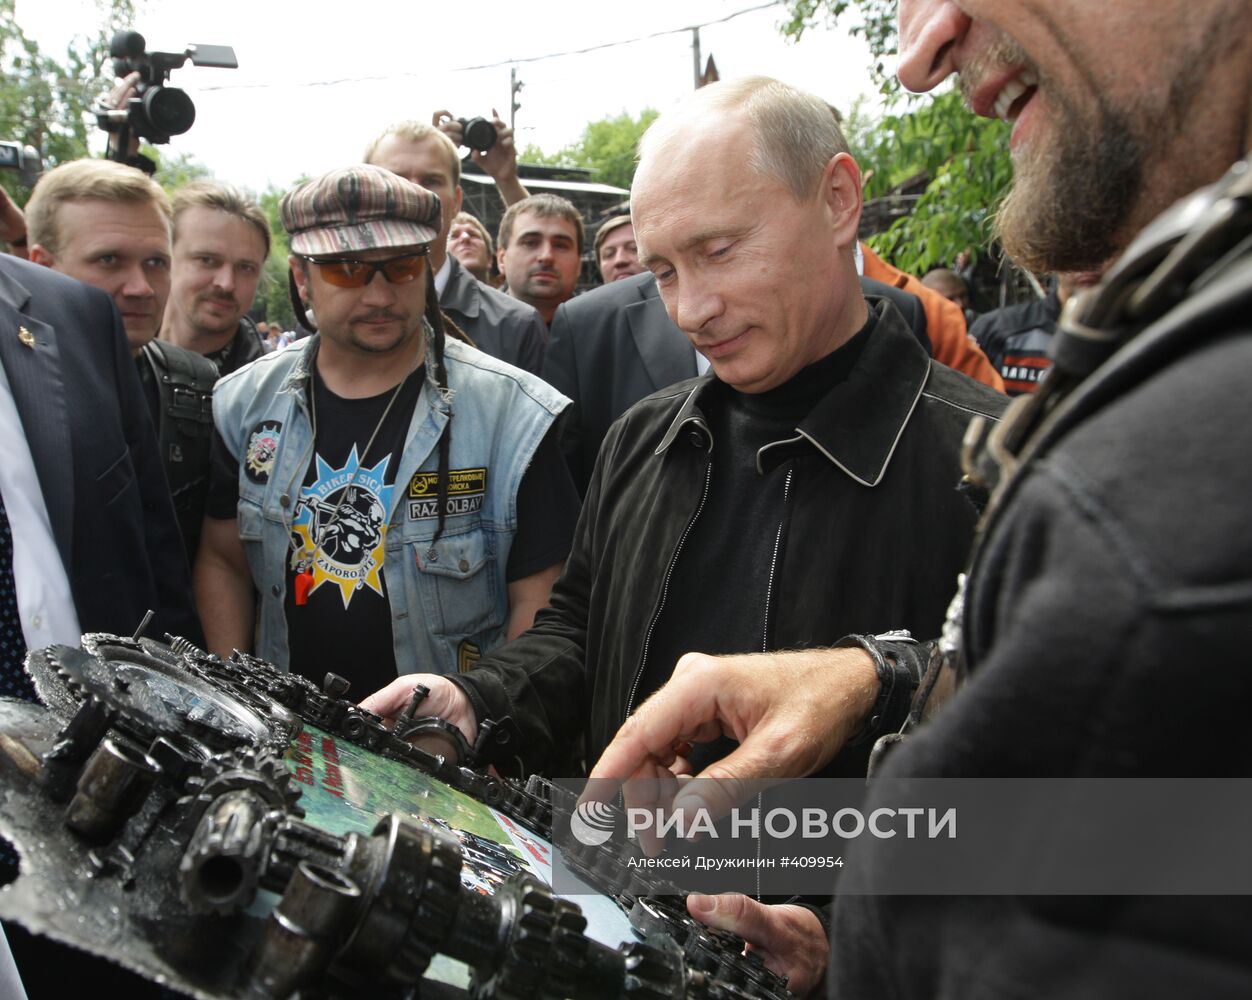 В.Путин посетил мотоклуб Ночные волки в Москве | РИА Новости Медиабанк